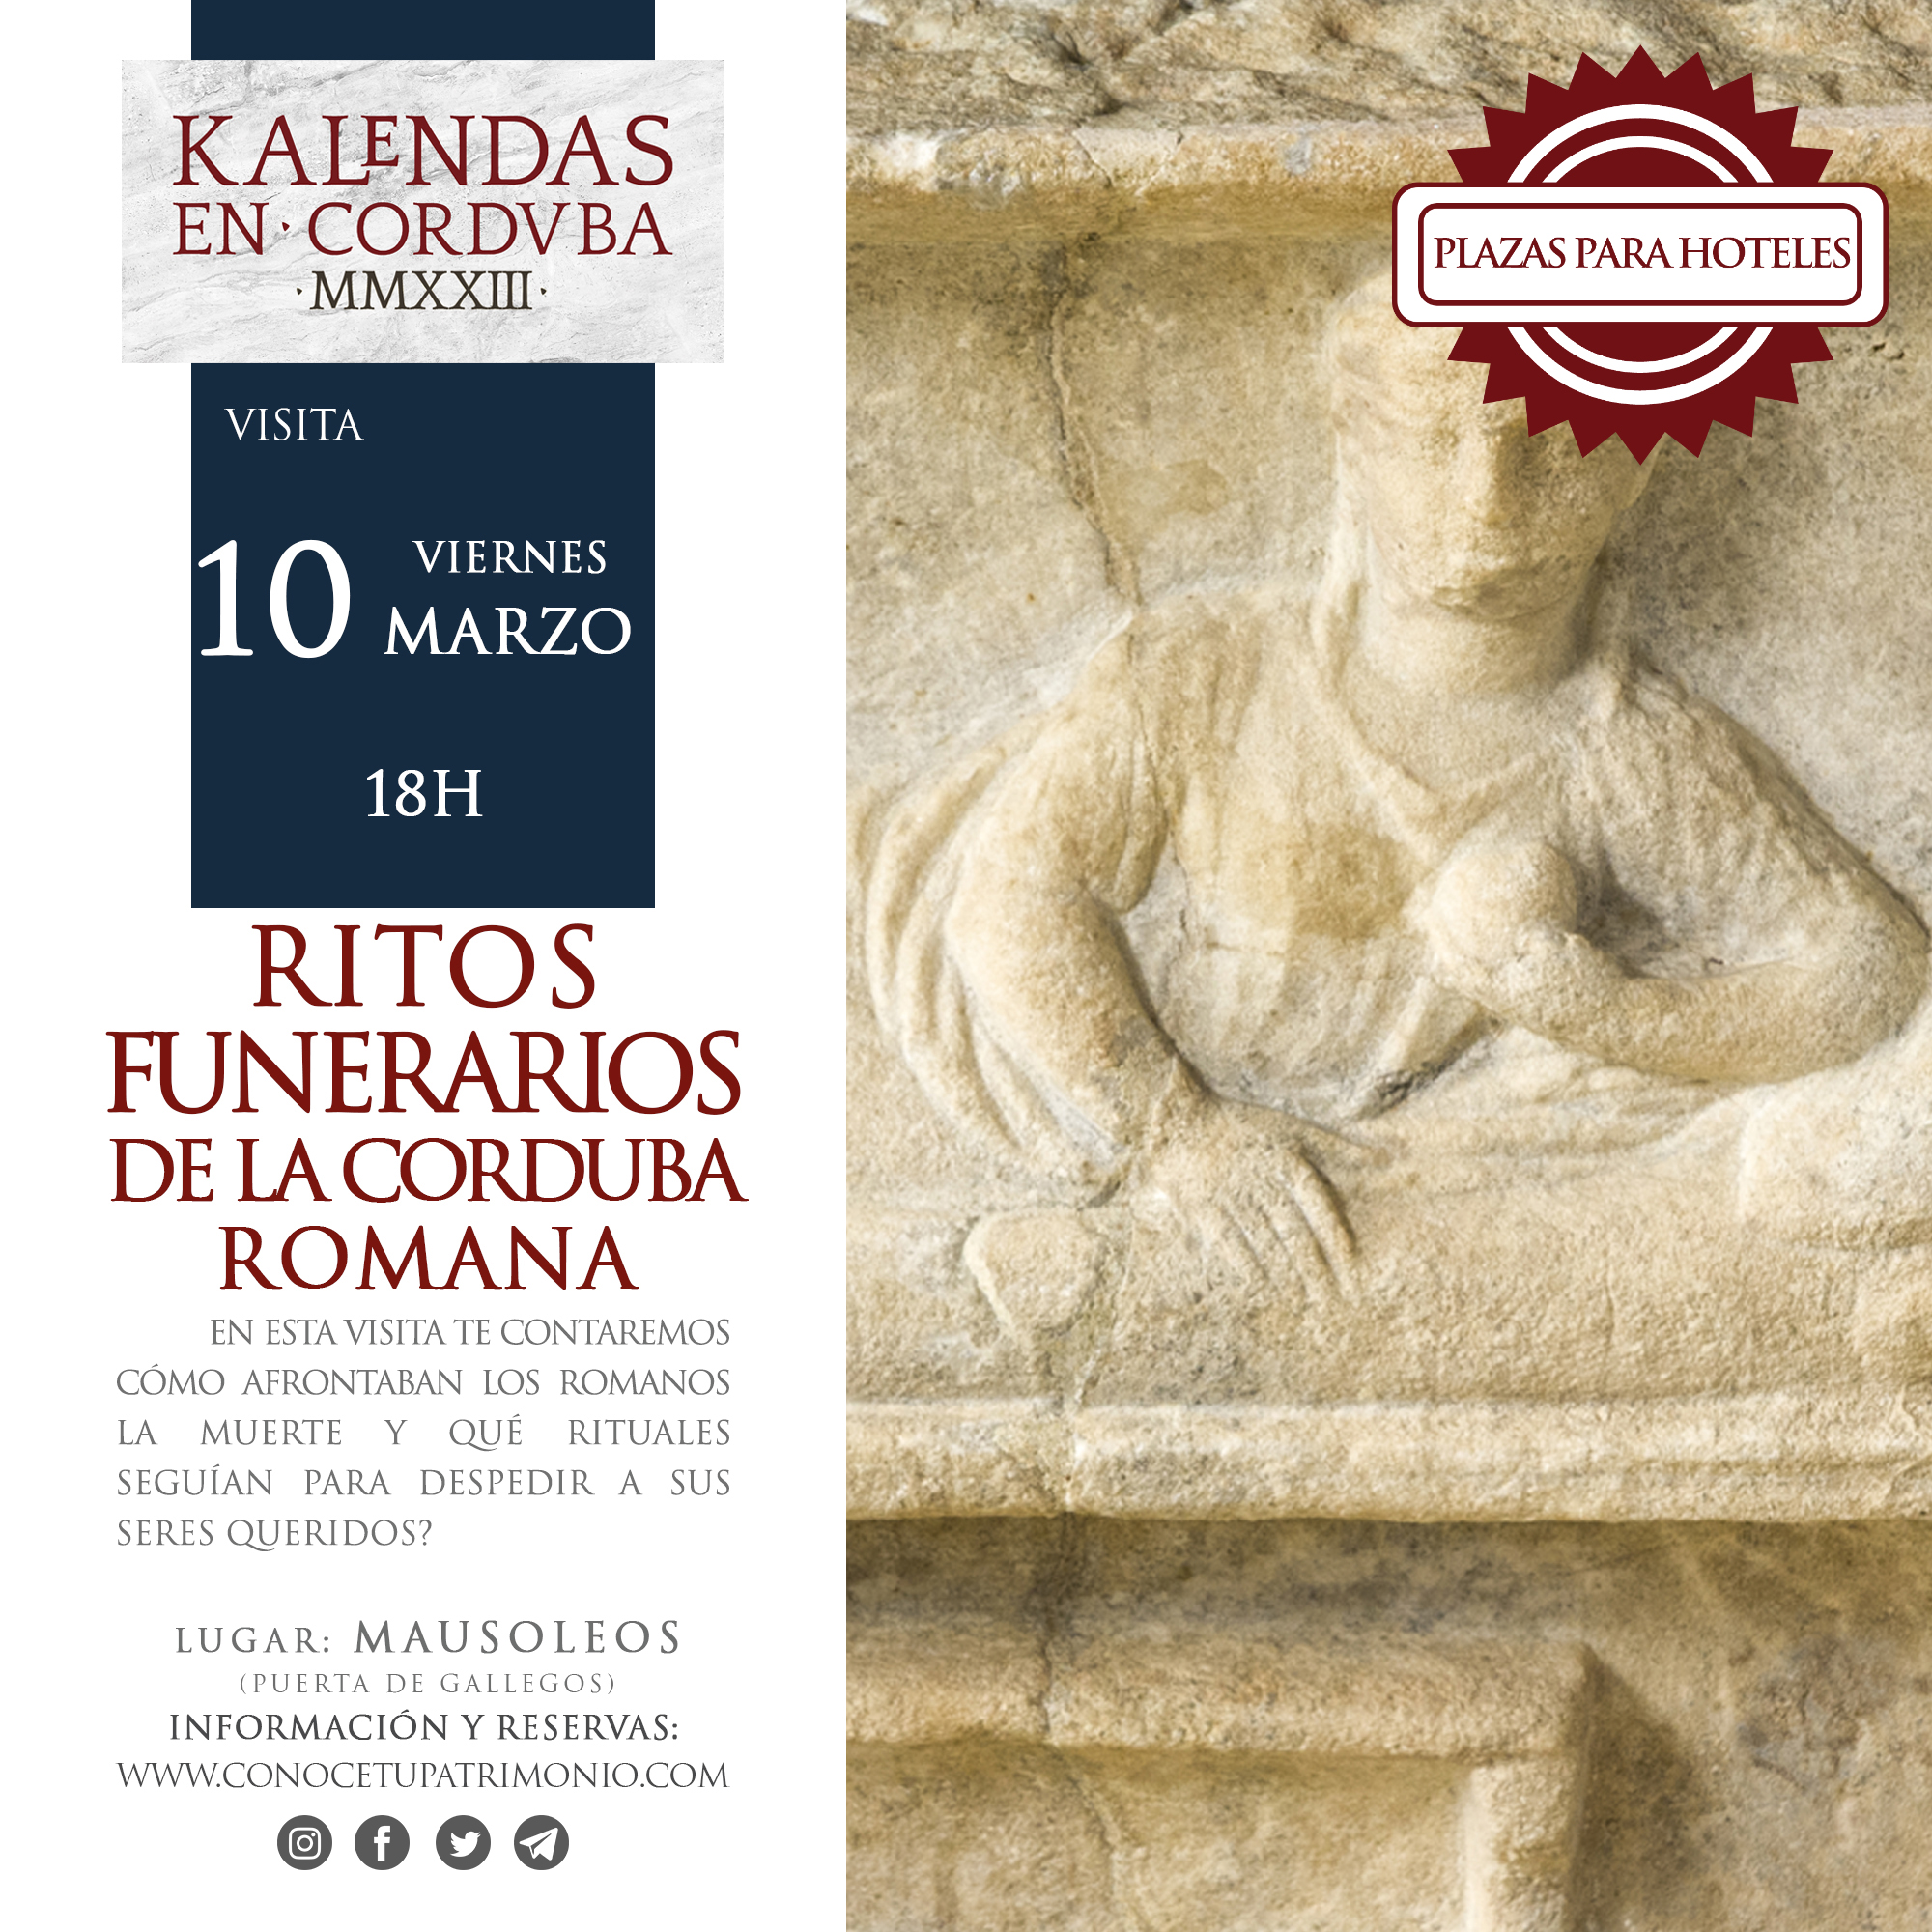 Hotel - Visita - Ritos funerarios de la Corduba romana - 10 Marzo - 18 h.